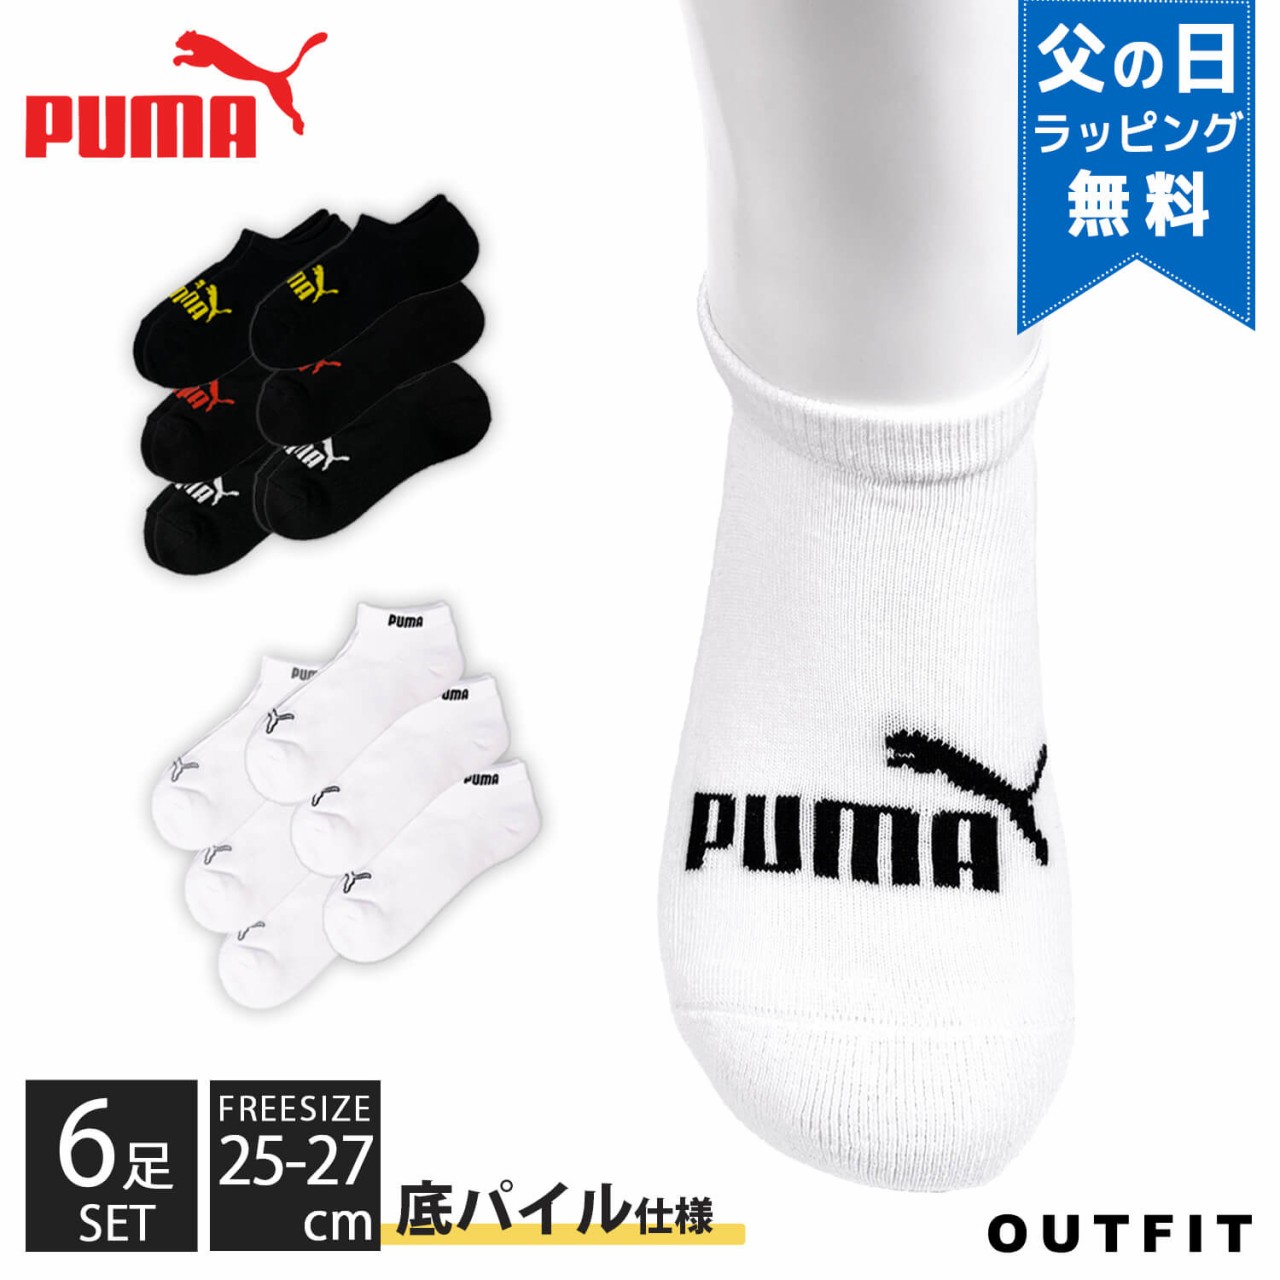 pm-socks-00001